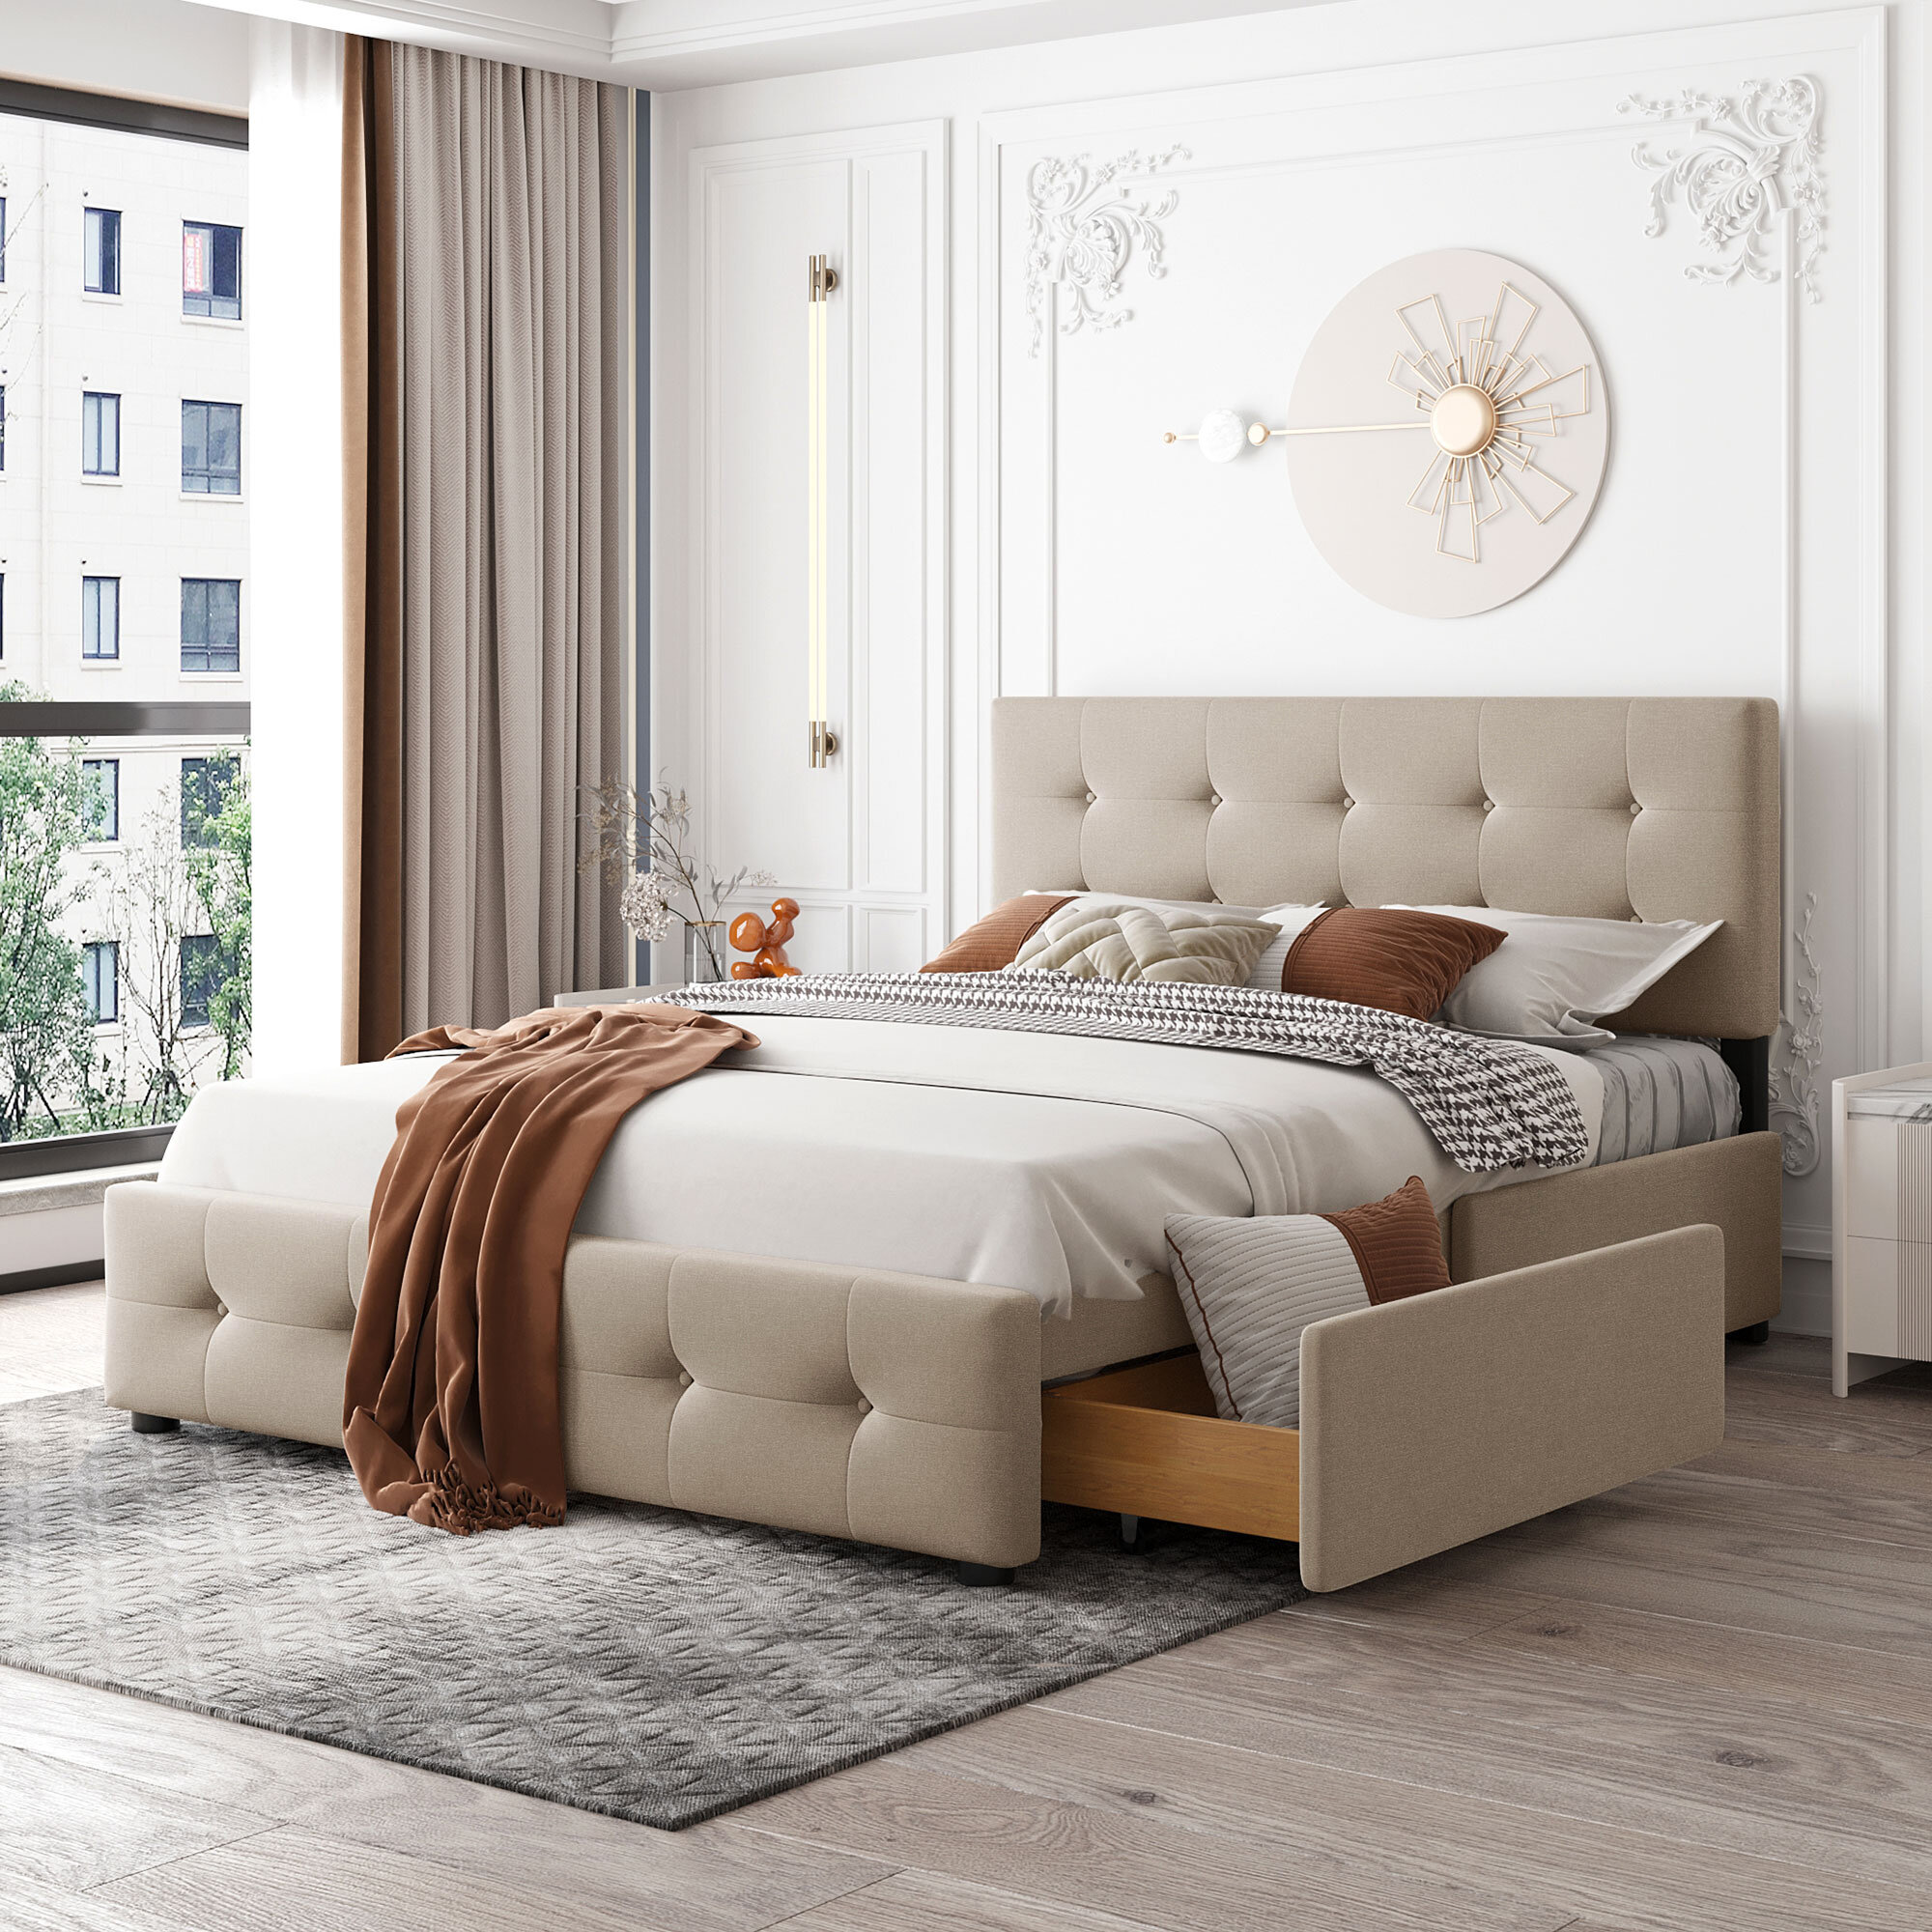 Queen Size Bed Frame Headboard Upholstered Platform Queen Bed Bedroom Furniture 